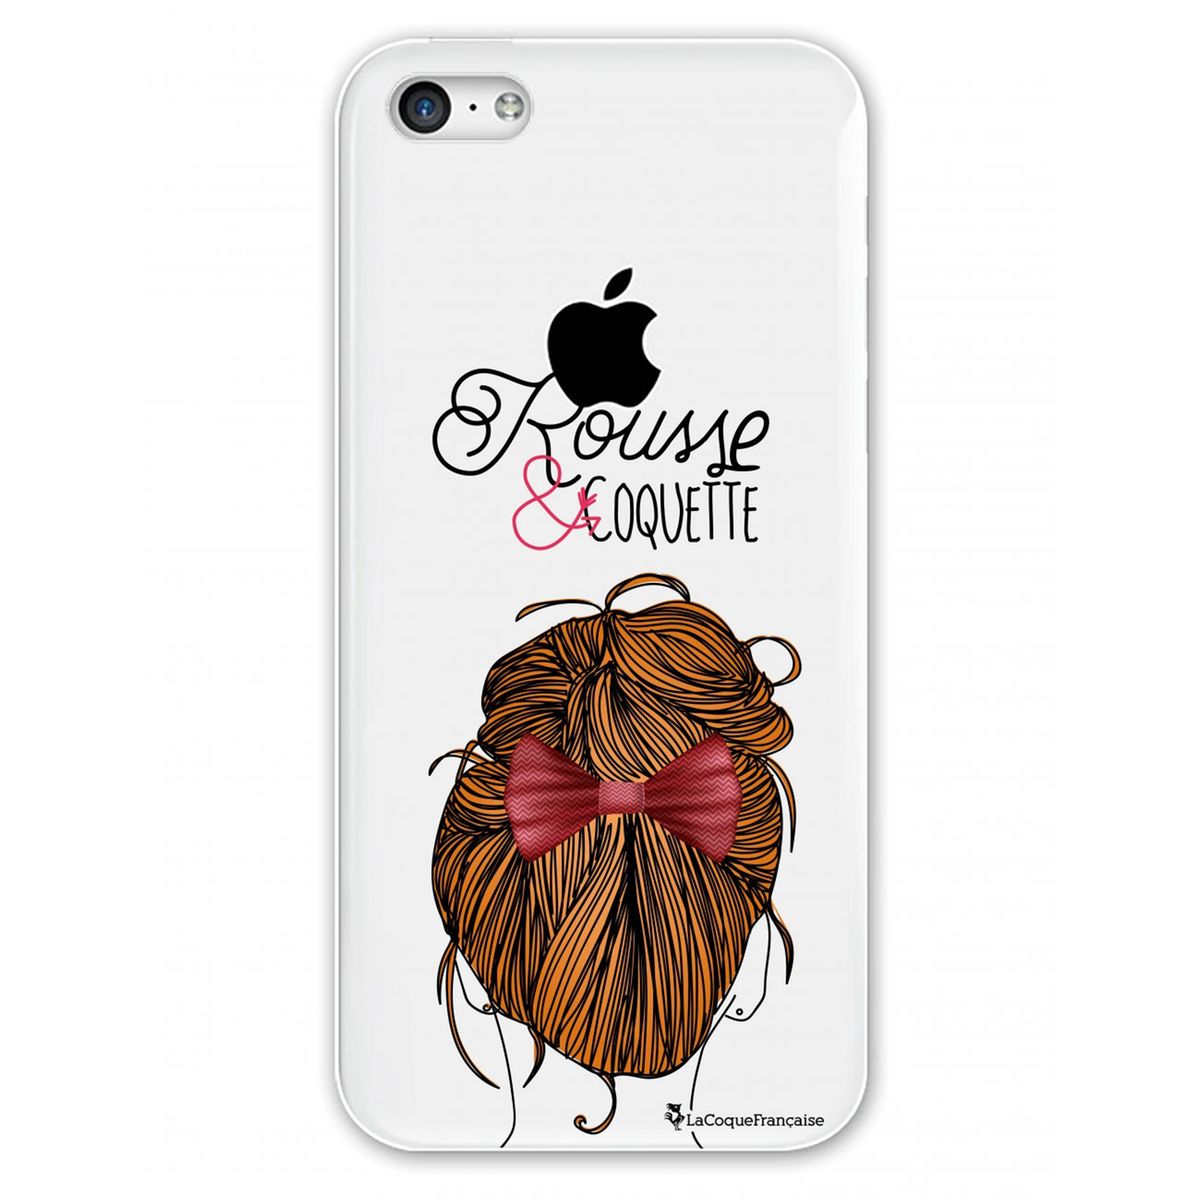 Coque iPhone 5C rigide transparente, Rousse et coquette, La Coque Francaise®